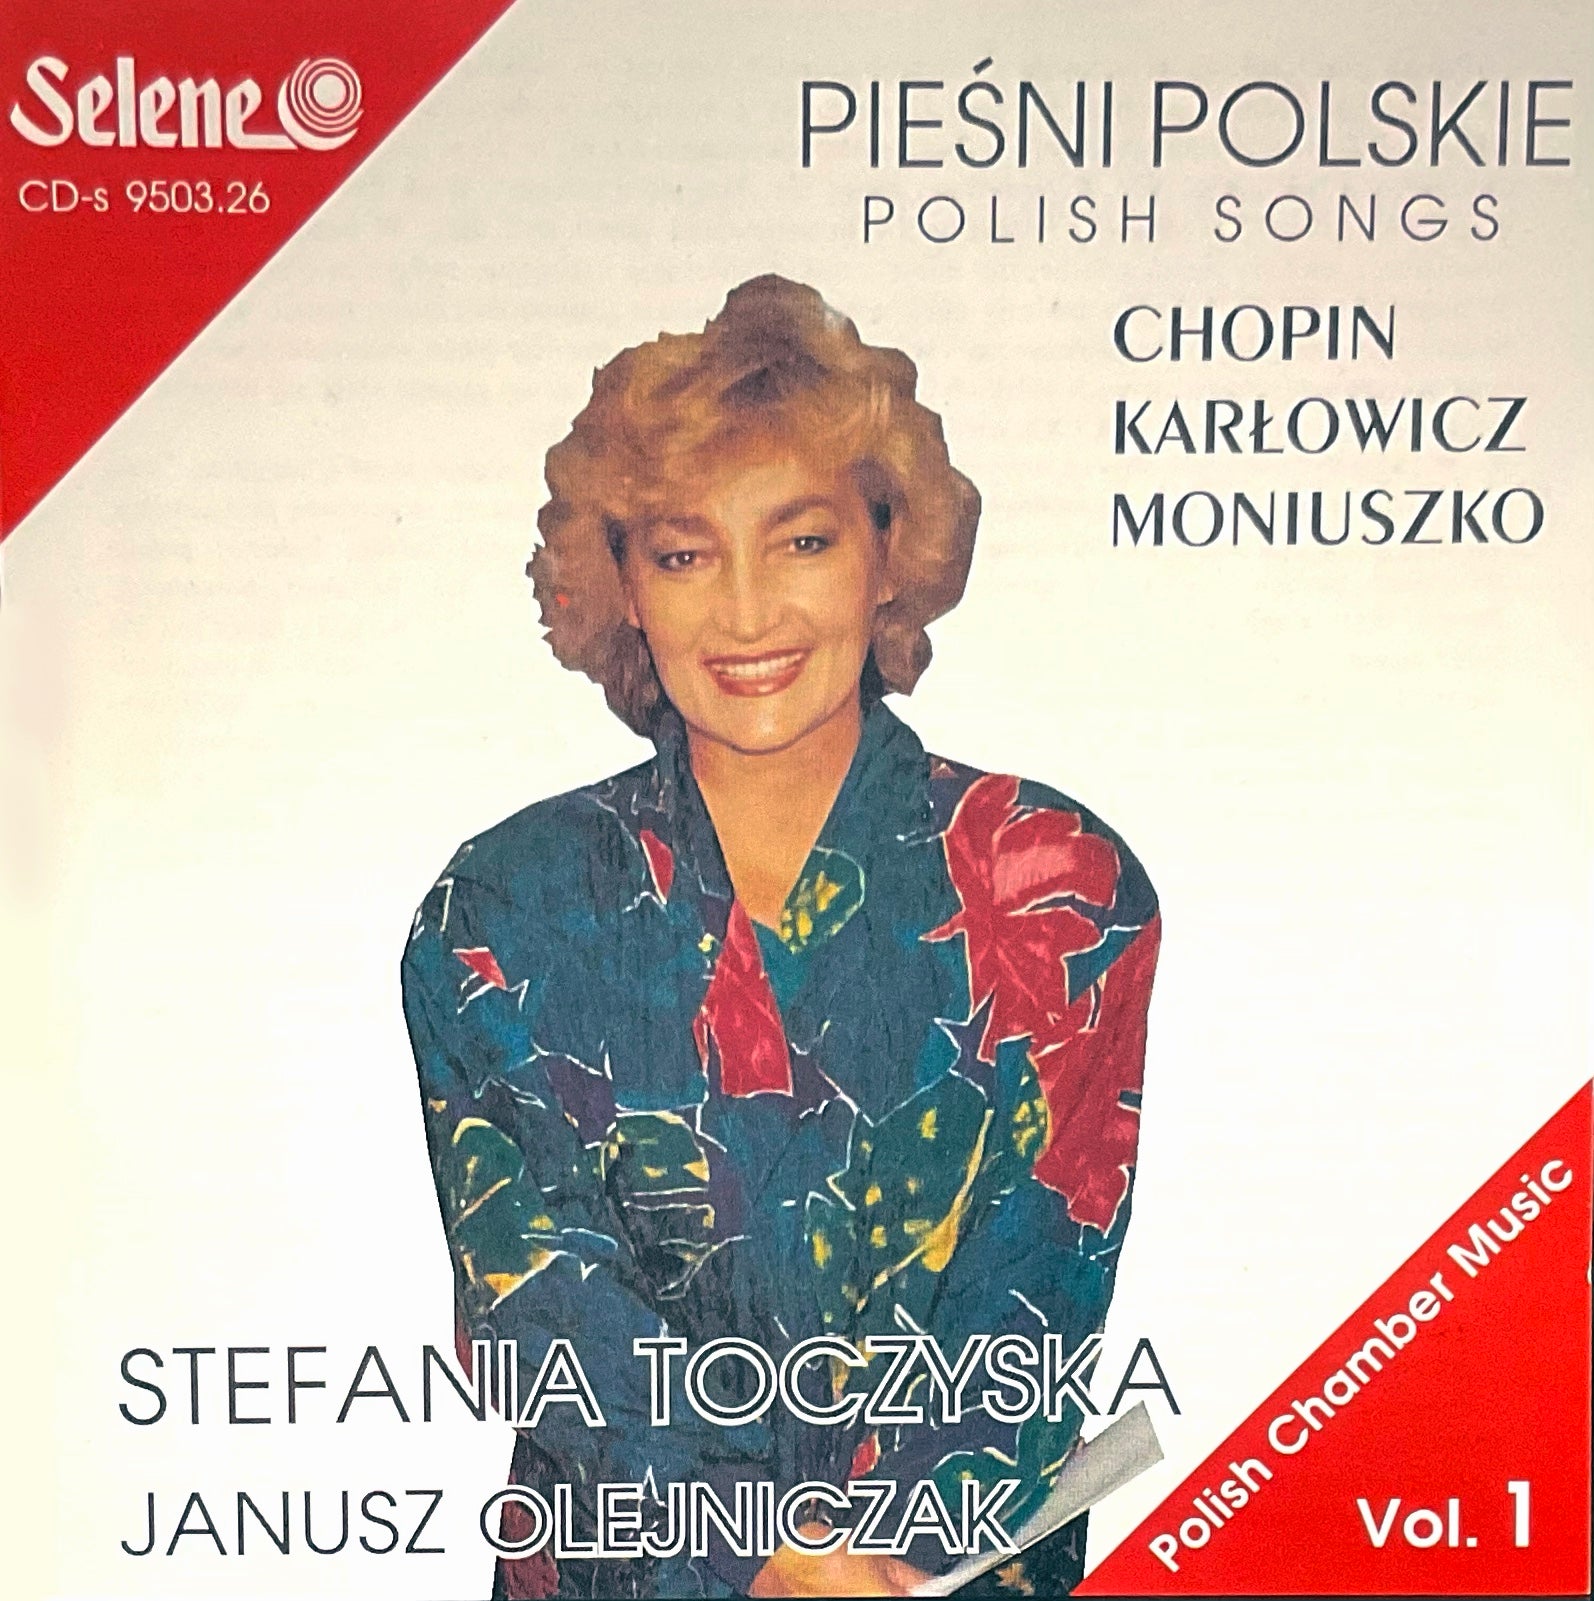 Piesni Polskie | Stefania Toczyska - Janusz Olejniczak